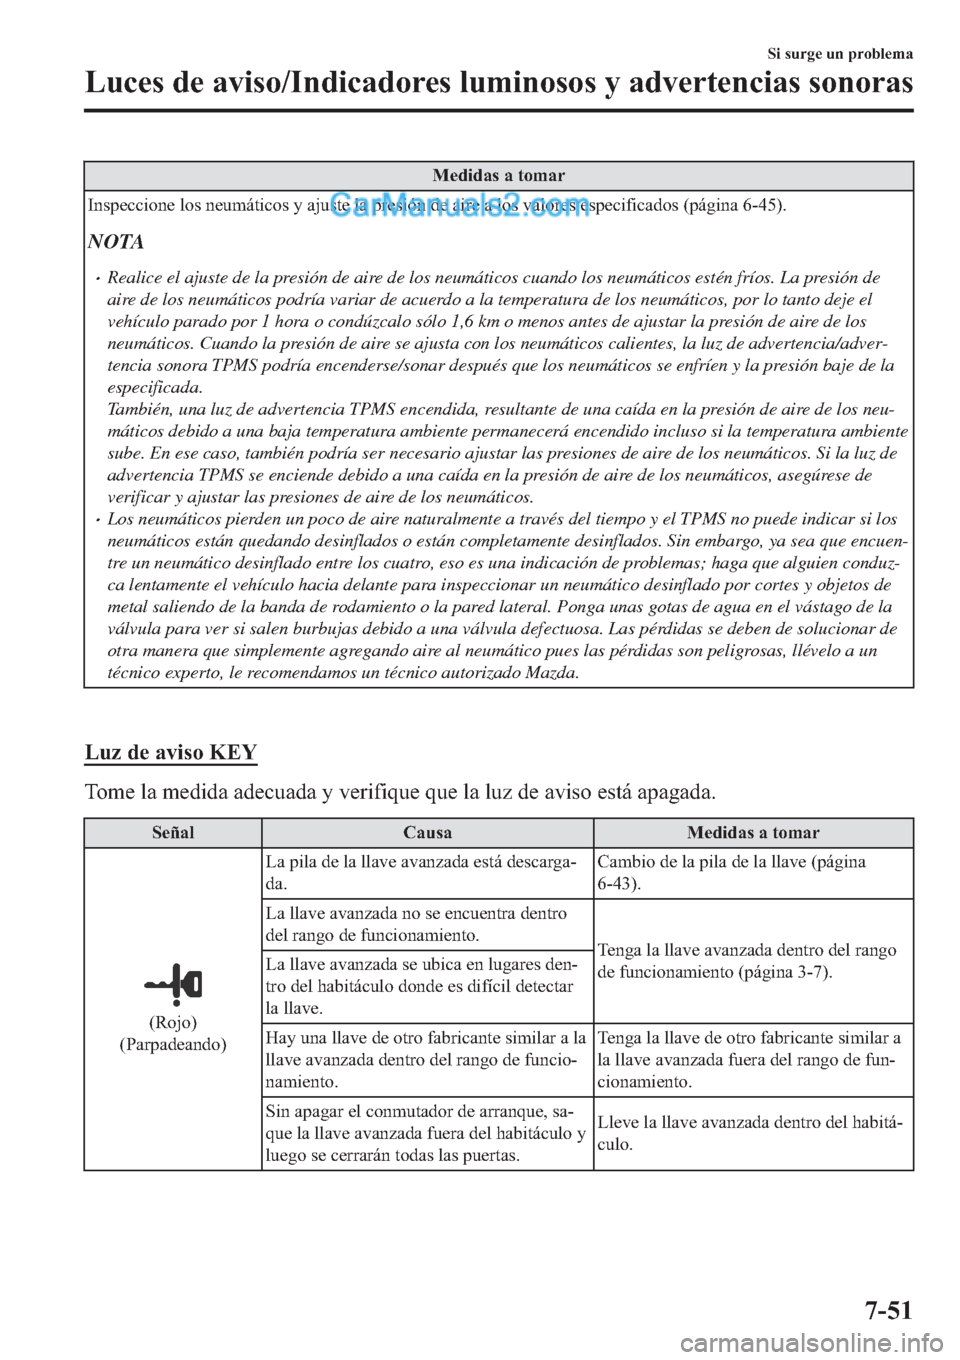 MAZDA MODEL 2 2019  Manual del propietario (in Spanish) �0�H�G�L�G�D�V��D��W�R�P�D�U
�,�Q�V�S�H�F�F�L�R�Q�H��O�R�V��Q�H�X�P�i�W�L�F�R�V��\��D�M�X�V�W�H��O�D��S�U�H�V�L�y�Q��G�H��D�L�U�H��D��O�R�V��Y�D�O�R�U�H�V��H�V�S�H�F�L�I�L�F�D�G�R�V���